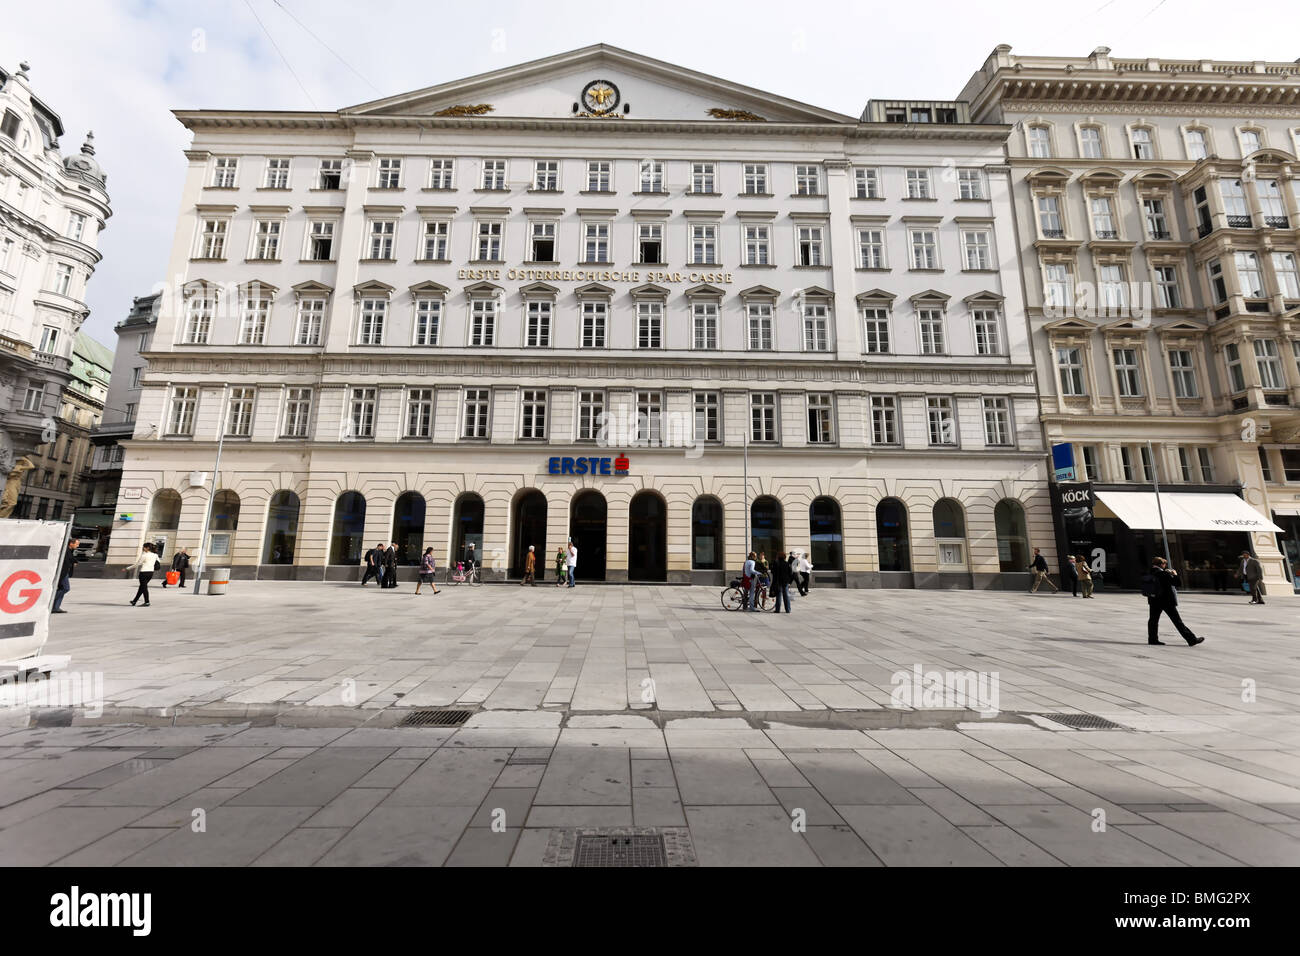 Austria, Vienna, Erste Bank Stock Photo